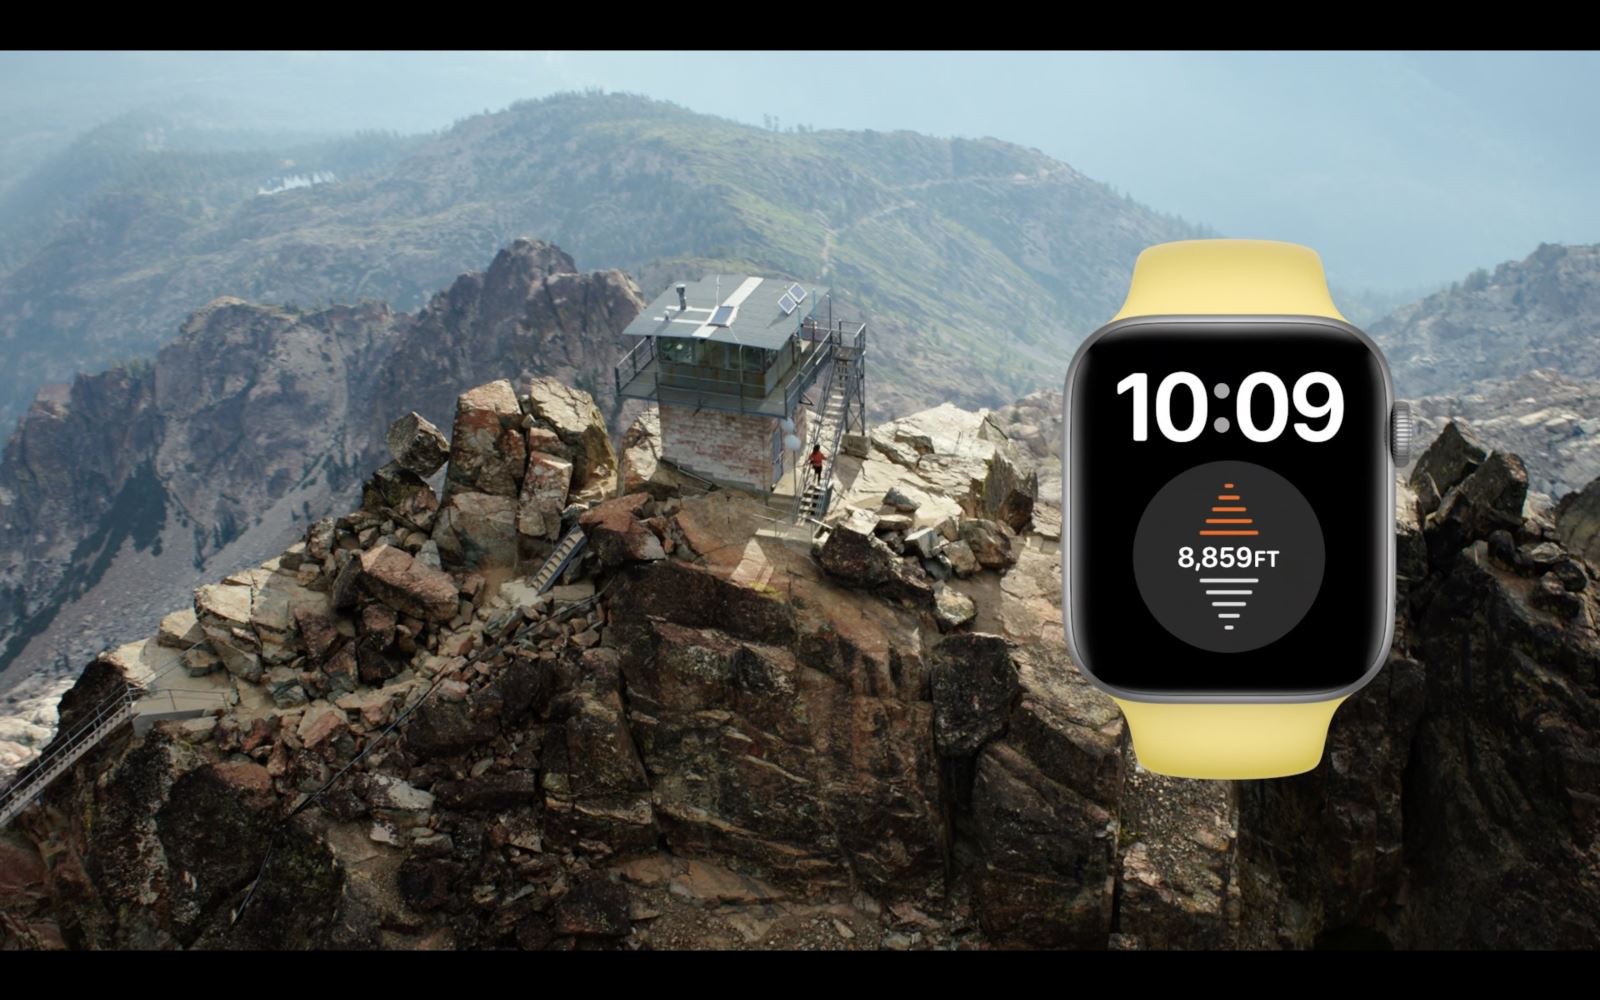 Máy đo độ cao là một tính năng mới trên Apple Watch Series 6